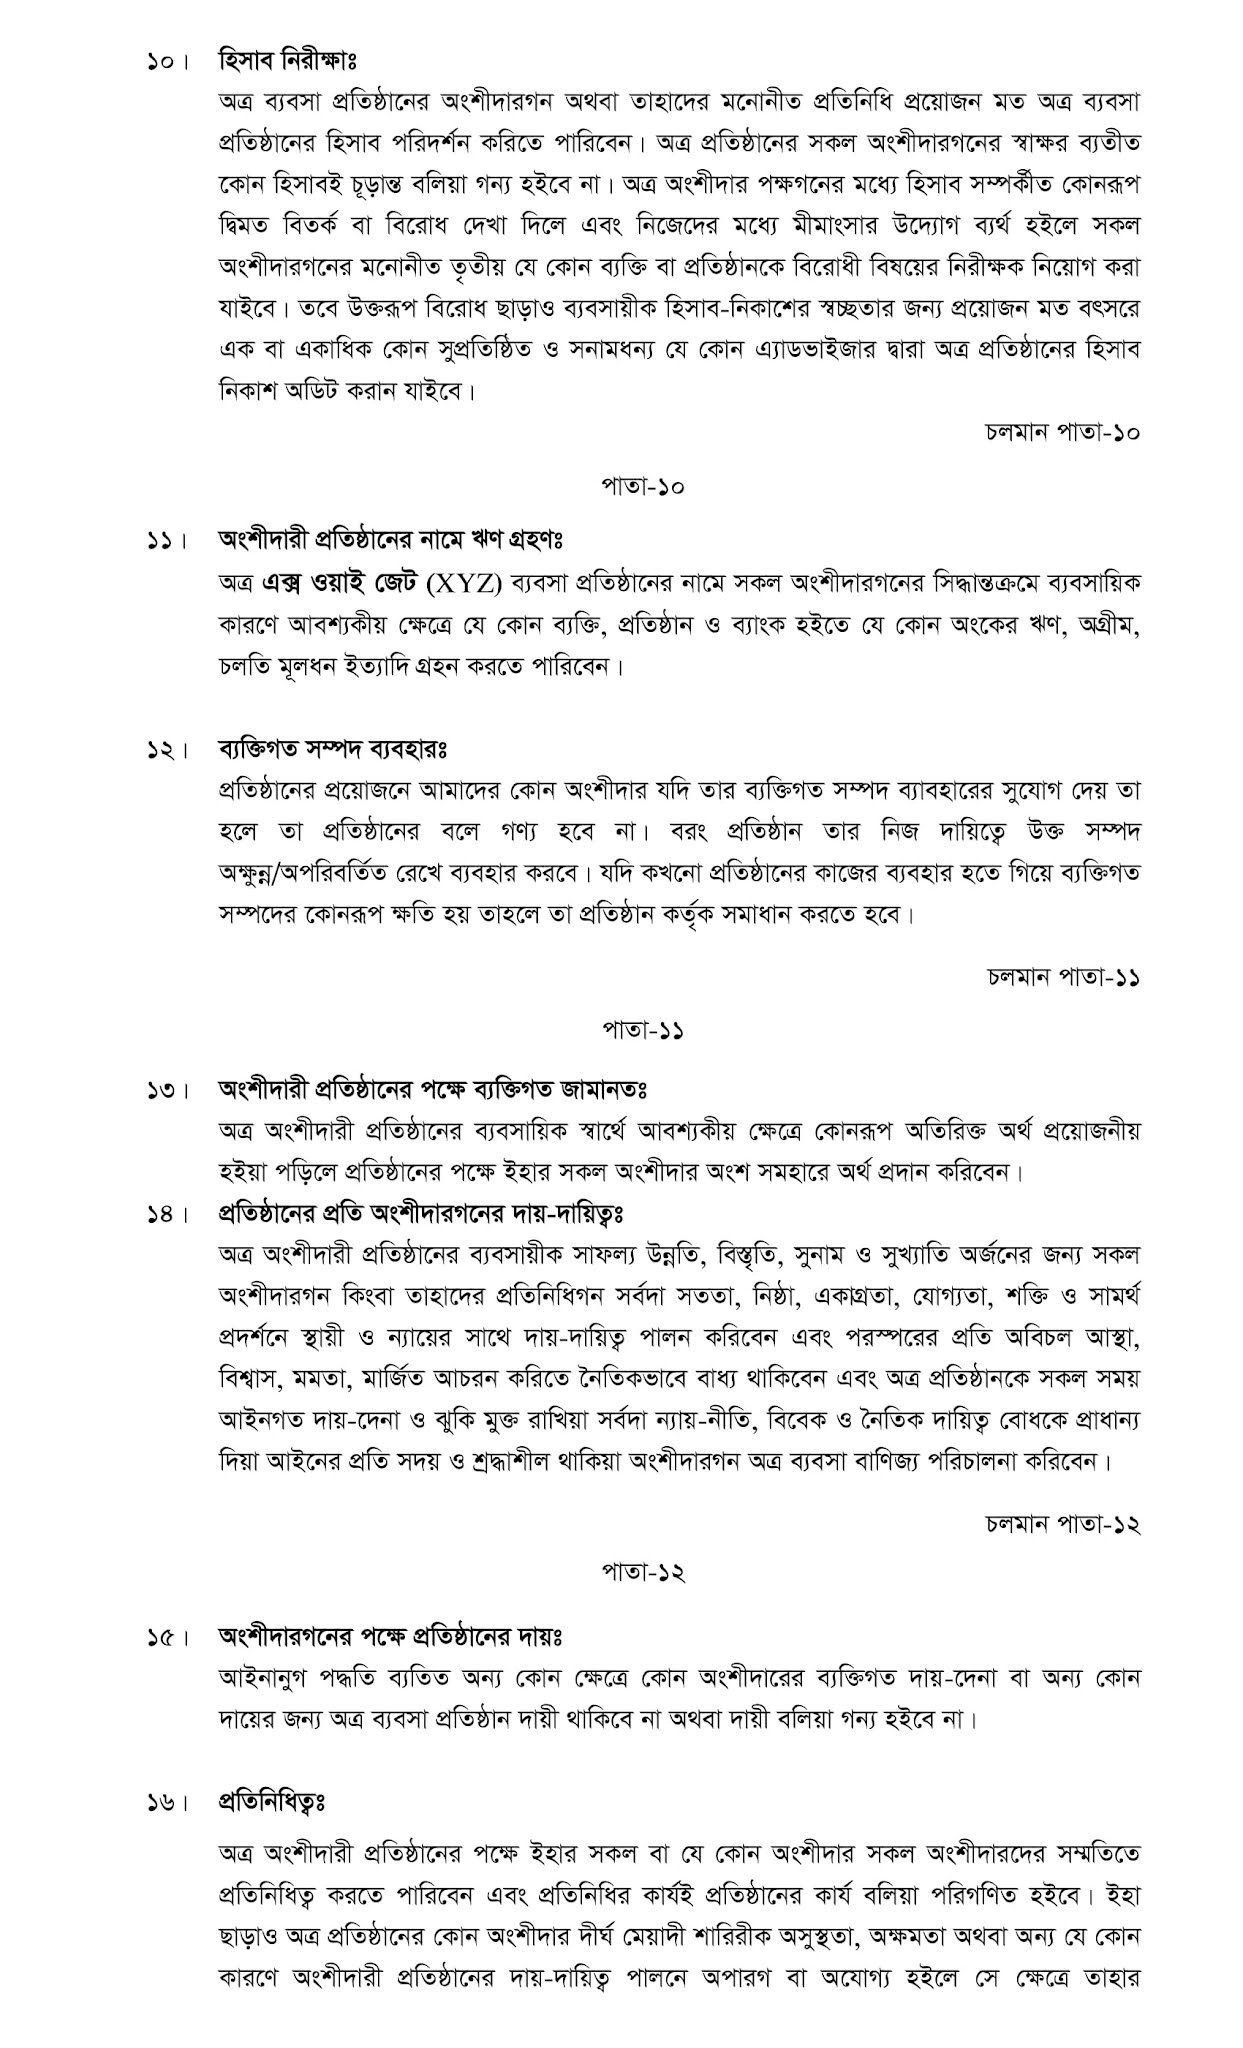 Partnership Deed in Bangla | Stamp required for partnership deed in bangladesh | পার্টনারশিপ চুক্তিপত্র দলিল স্ট্যাম্প অনুযায়ী।